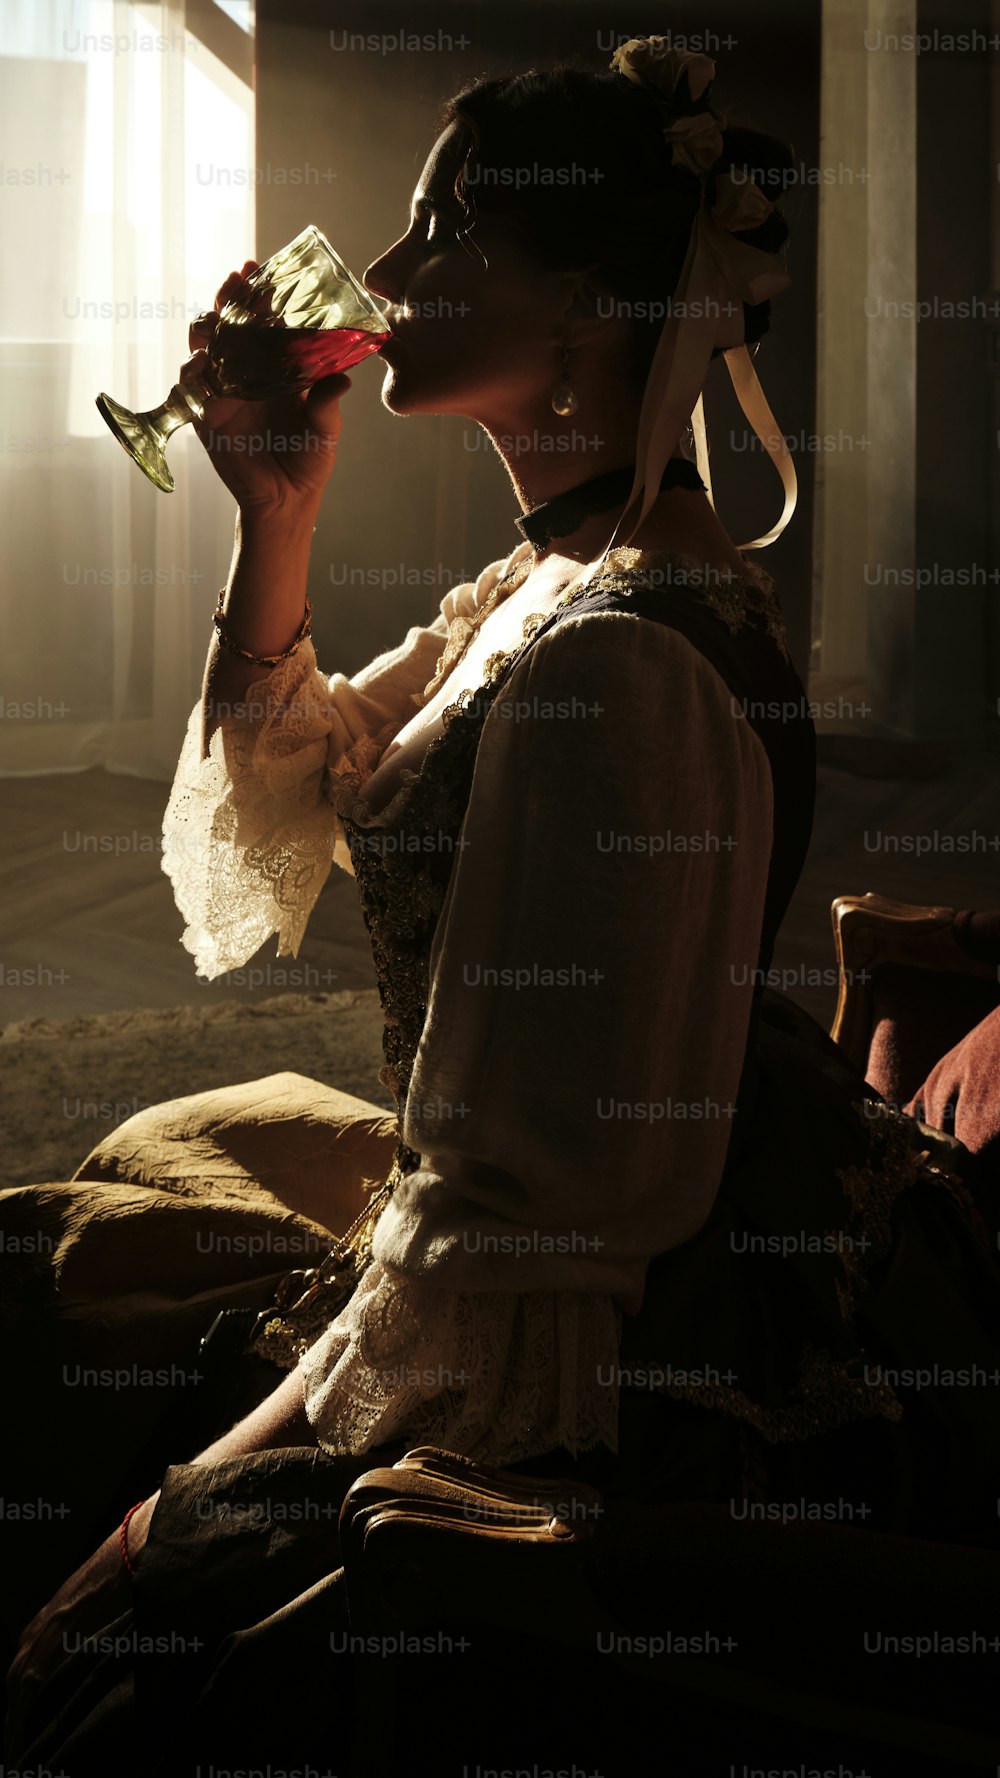 Une femme assise buvant dans un verre de vin